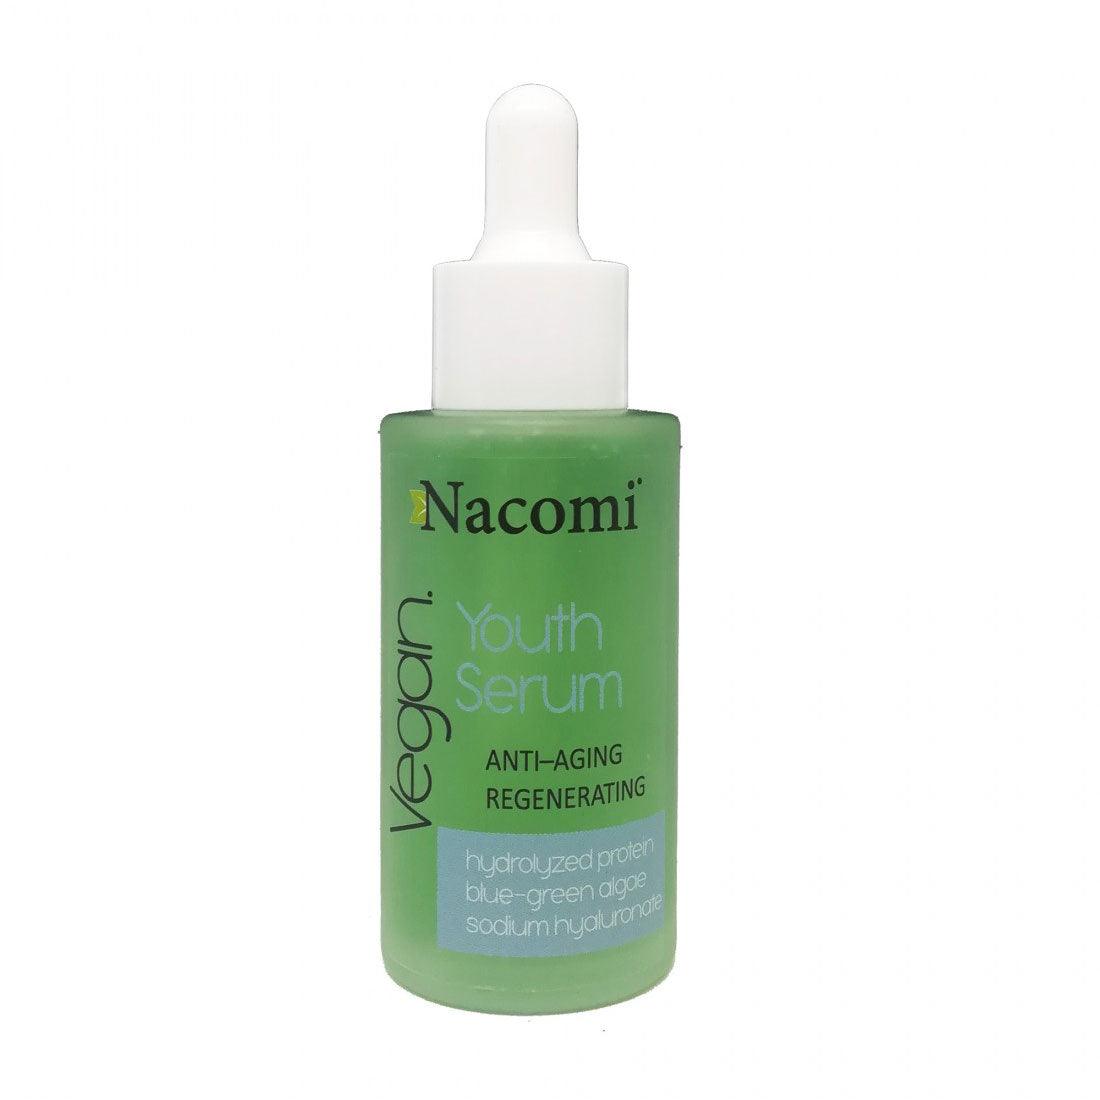 Nacomi Youth Serum – Anti-aging & Regenerating Serum 40 ml - Mrayti Store